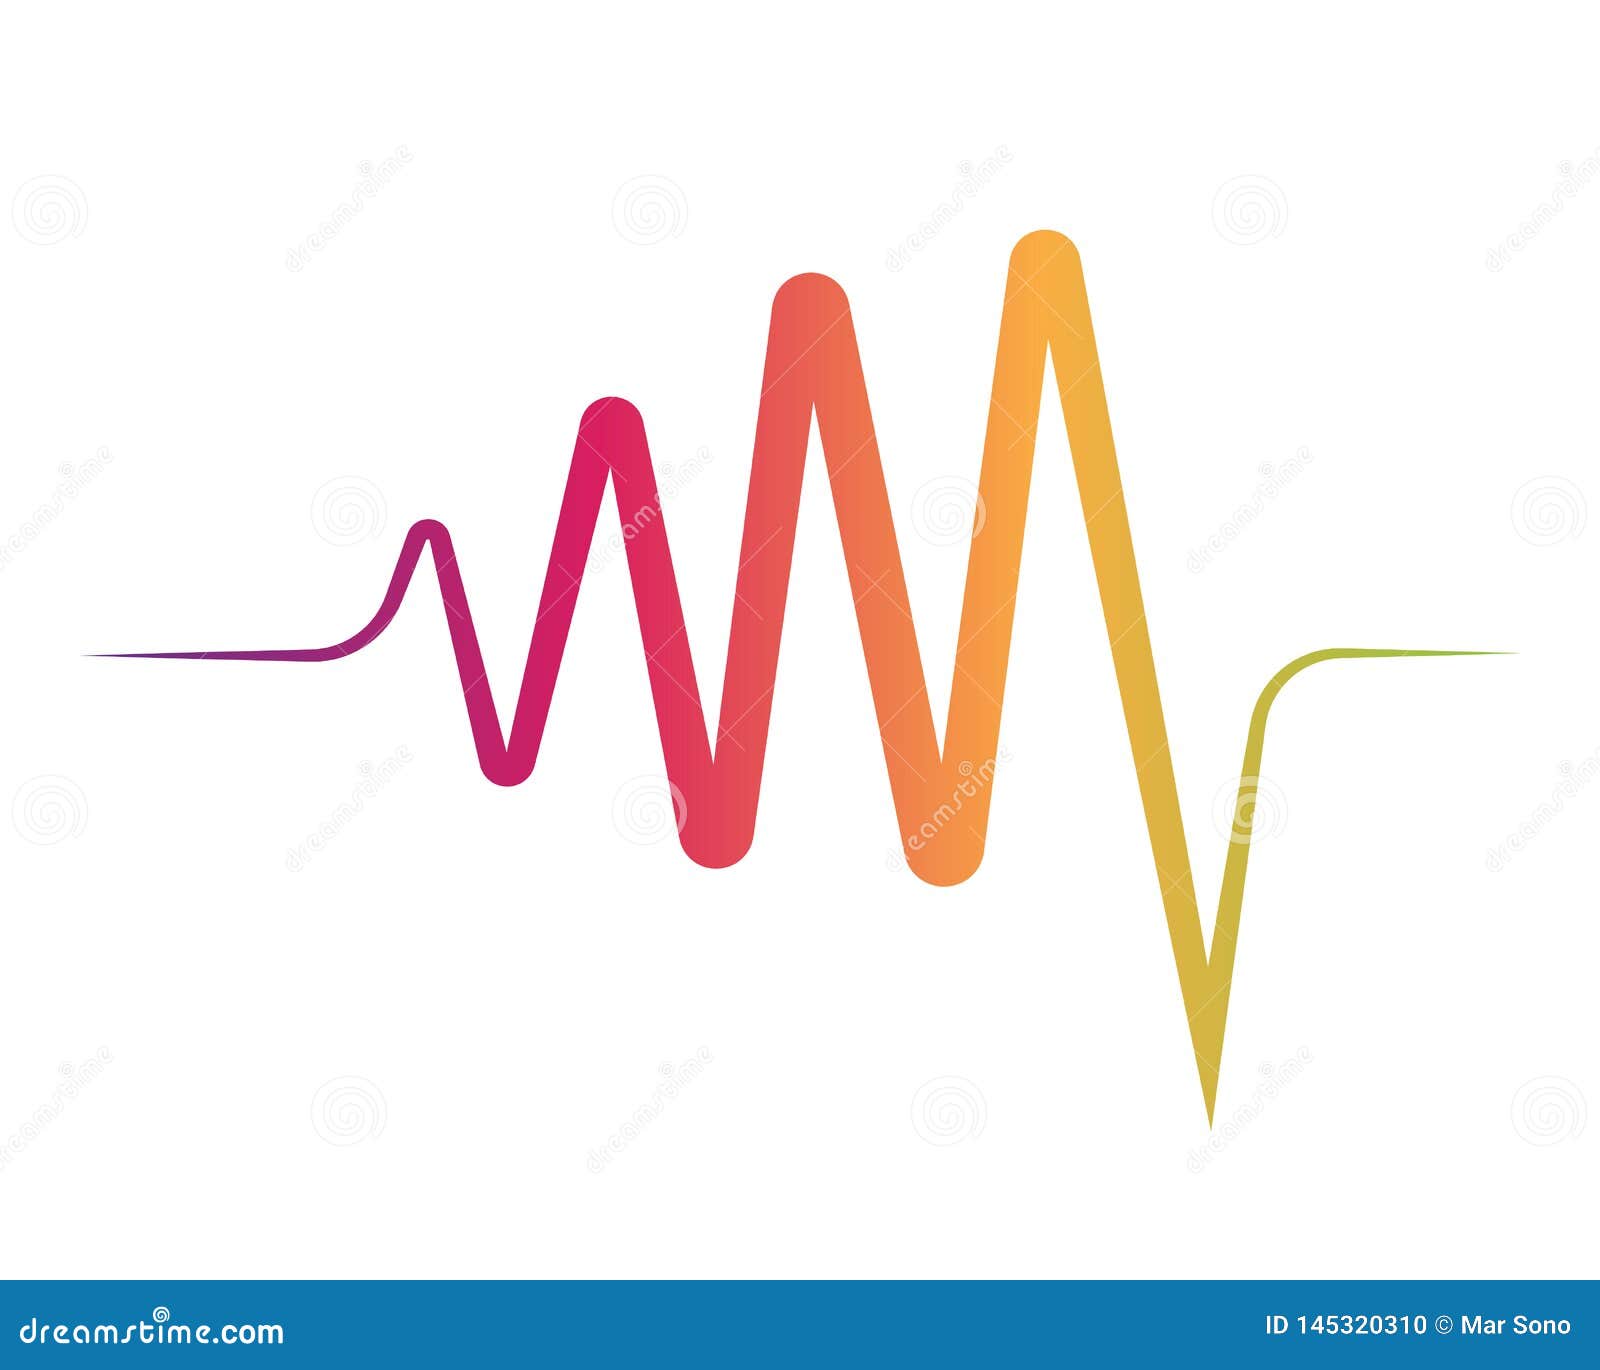 Correcte golven vectorillustratie. Audio van de de ontwerpsjabloonomvang van de correcte golven slaat de vectorillustratie van de de discoaardbeving van het clubconcept digitale van de het elementenequaliser de vormfrequentie de grafische niveaulijn media van het de partijpatroon van de melodiemuziek van de het spelspeler van het het verslagregistreertoestel het radio van het de wetenschaps schuddende signaal spectrum luistert van de het liedsound-track soundwave de stereotrilling van de symbooltechnologie trillingen stemt